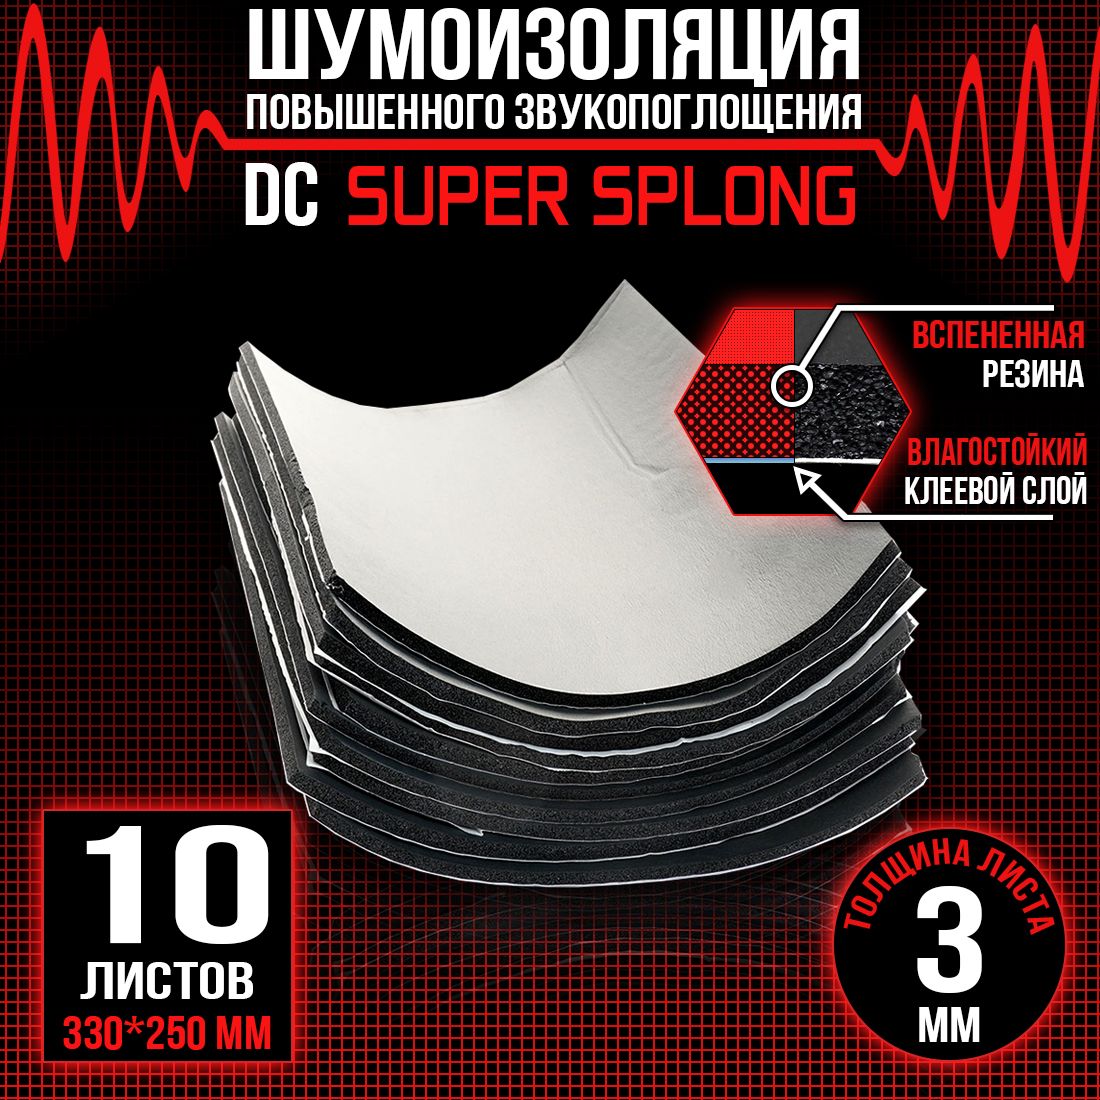 15 листов - Звукоизоляция с повышенным звукопоглощением DreamCar Super Splong 3мм 33х25см - 15 листов